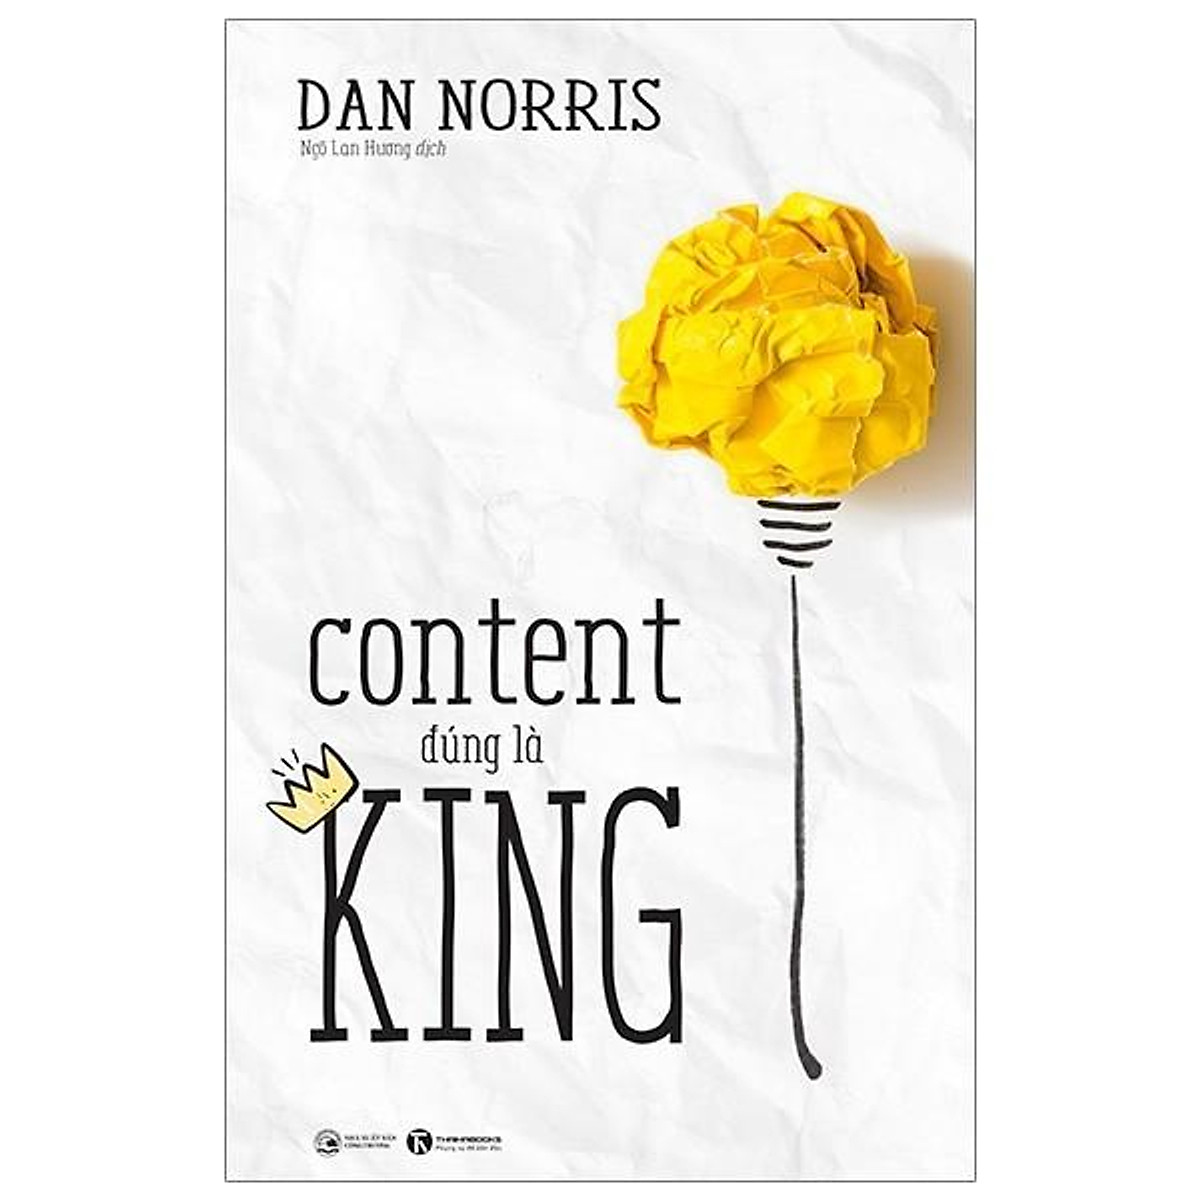 Sách - Combo: Linh Hồn Của Quảng Cáo + Để Ngôn Từ Trở Thành Sức Mạnh + Content Đúng Là King (3 cuốn)